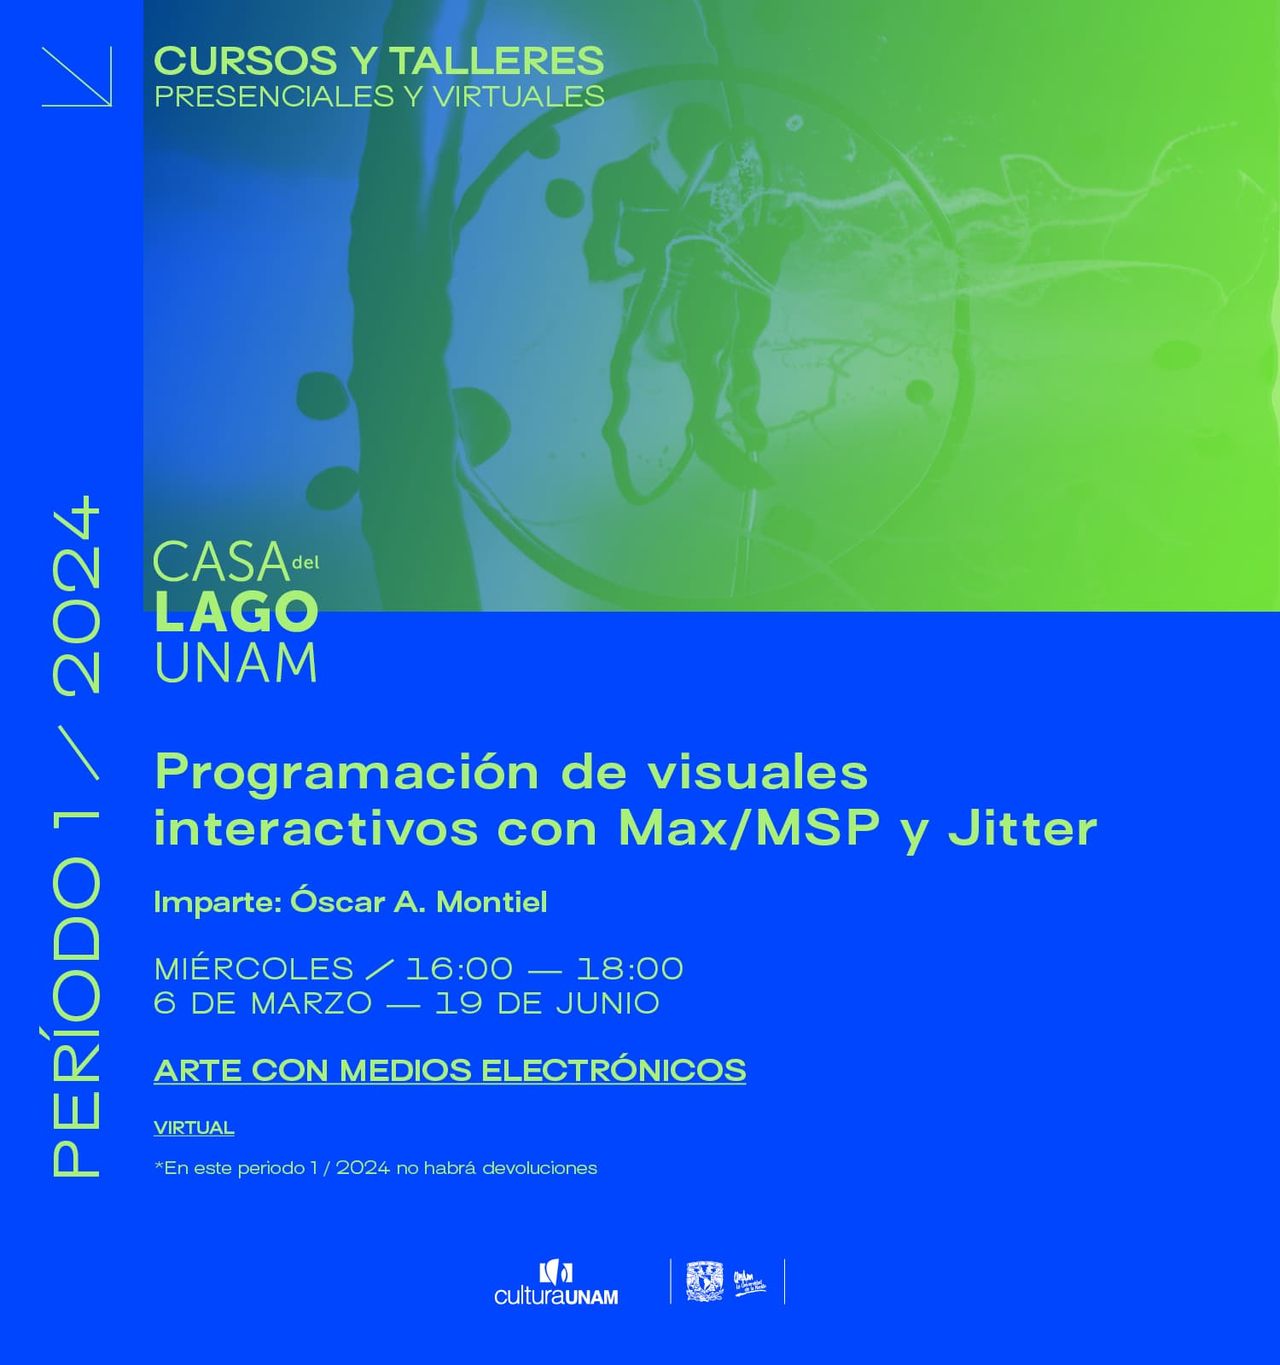 Óscar A. Montiel — Max/MSP Workshop for Casa del Lago, UNAM